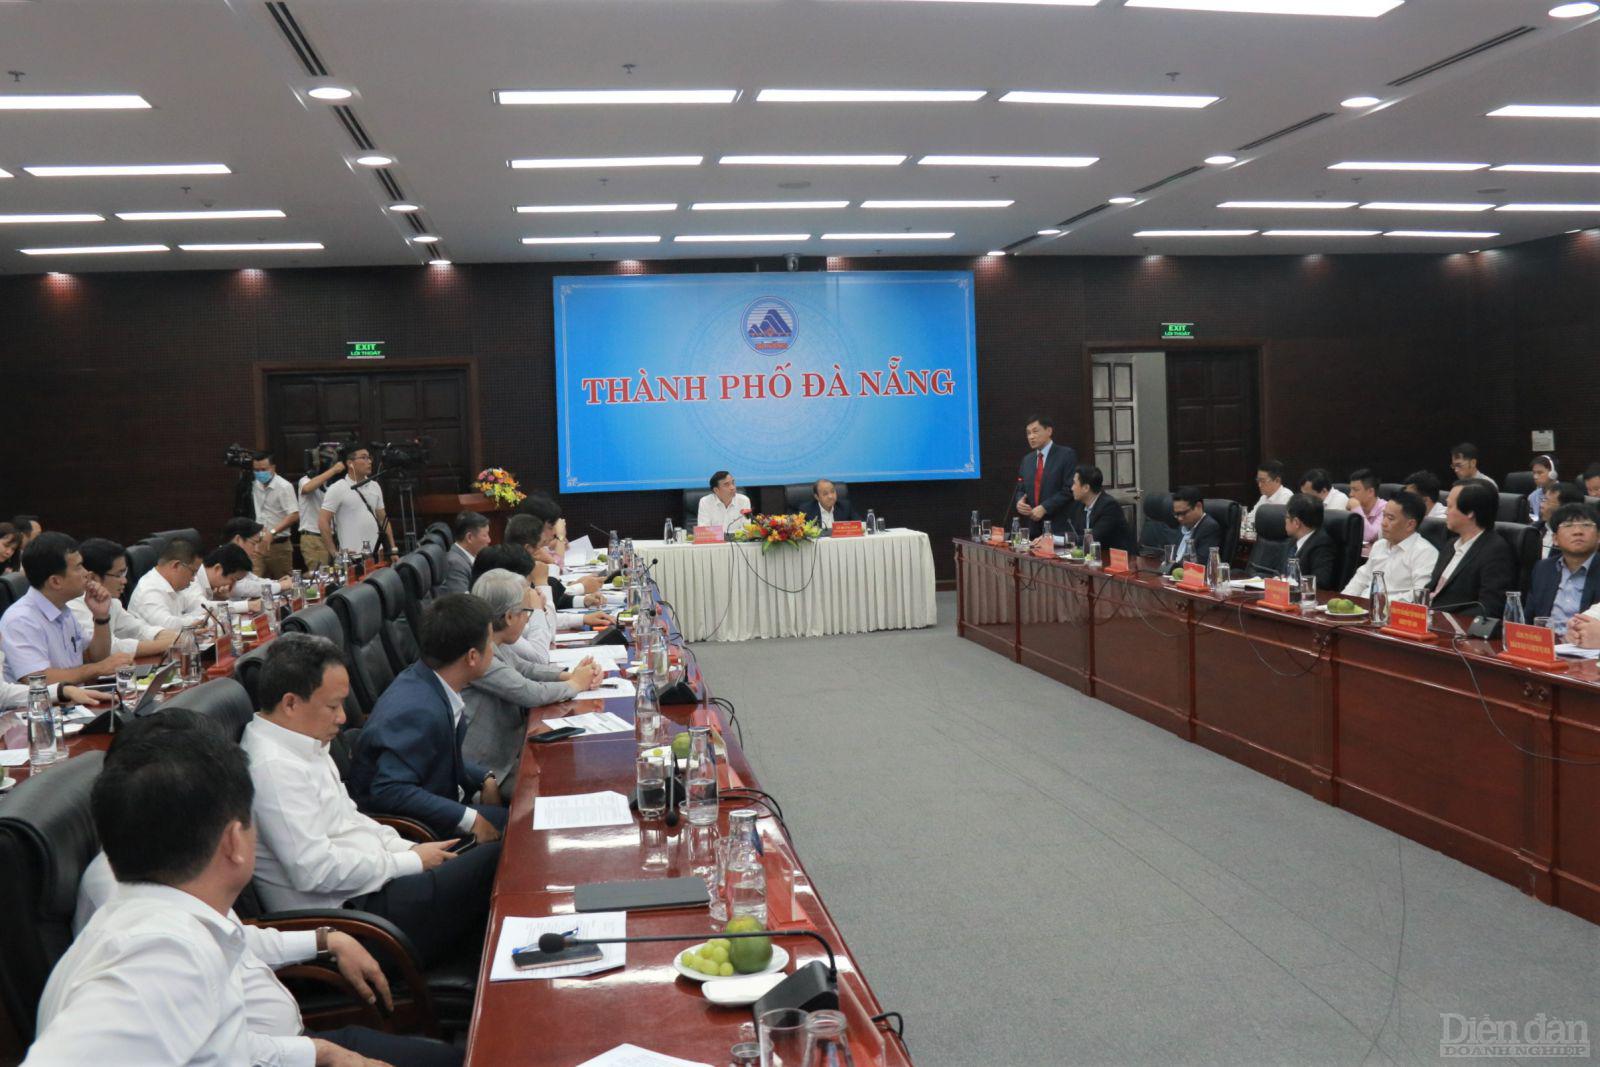 Chủ tịch Đà Nẵng: Quy hoạch thành phố minh bạch, không tồn tại lợi ích nhóm - Ảnh 1.